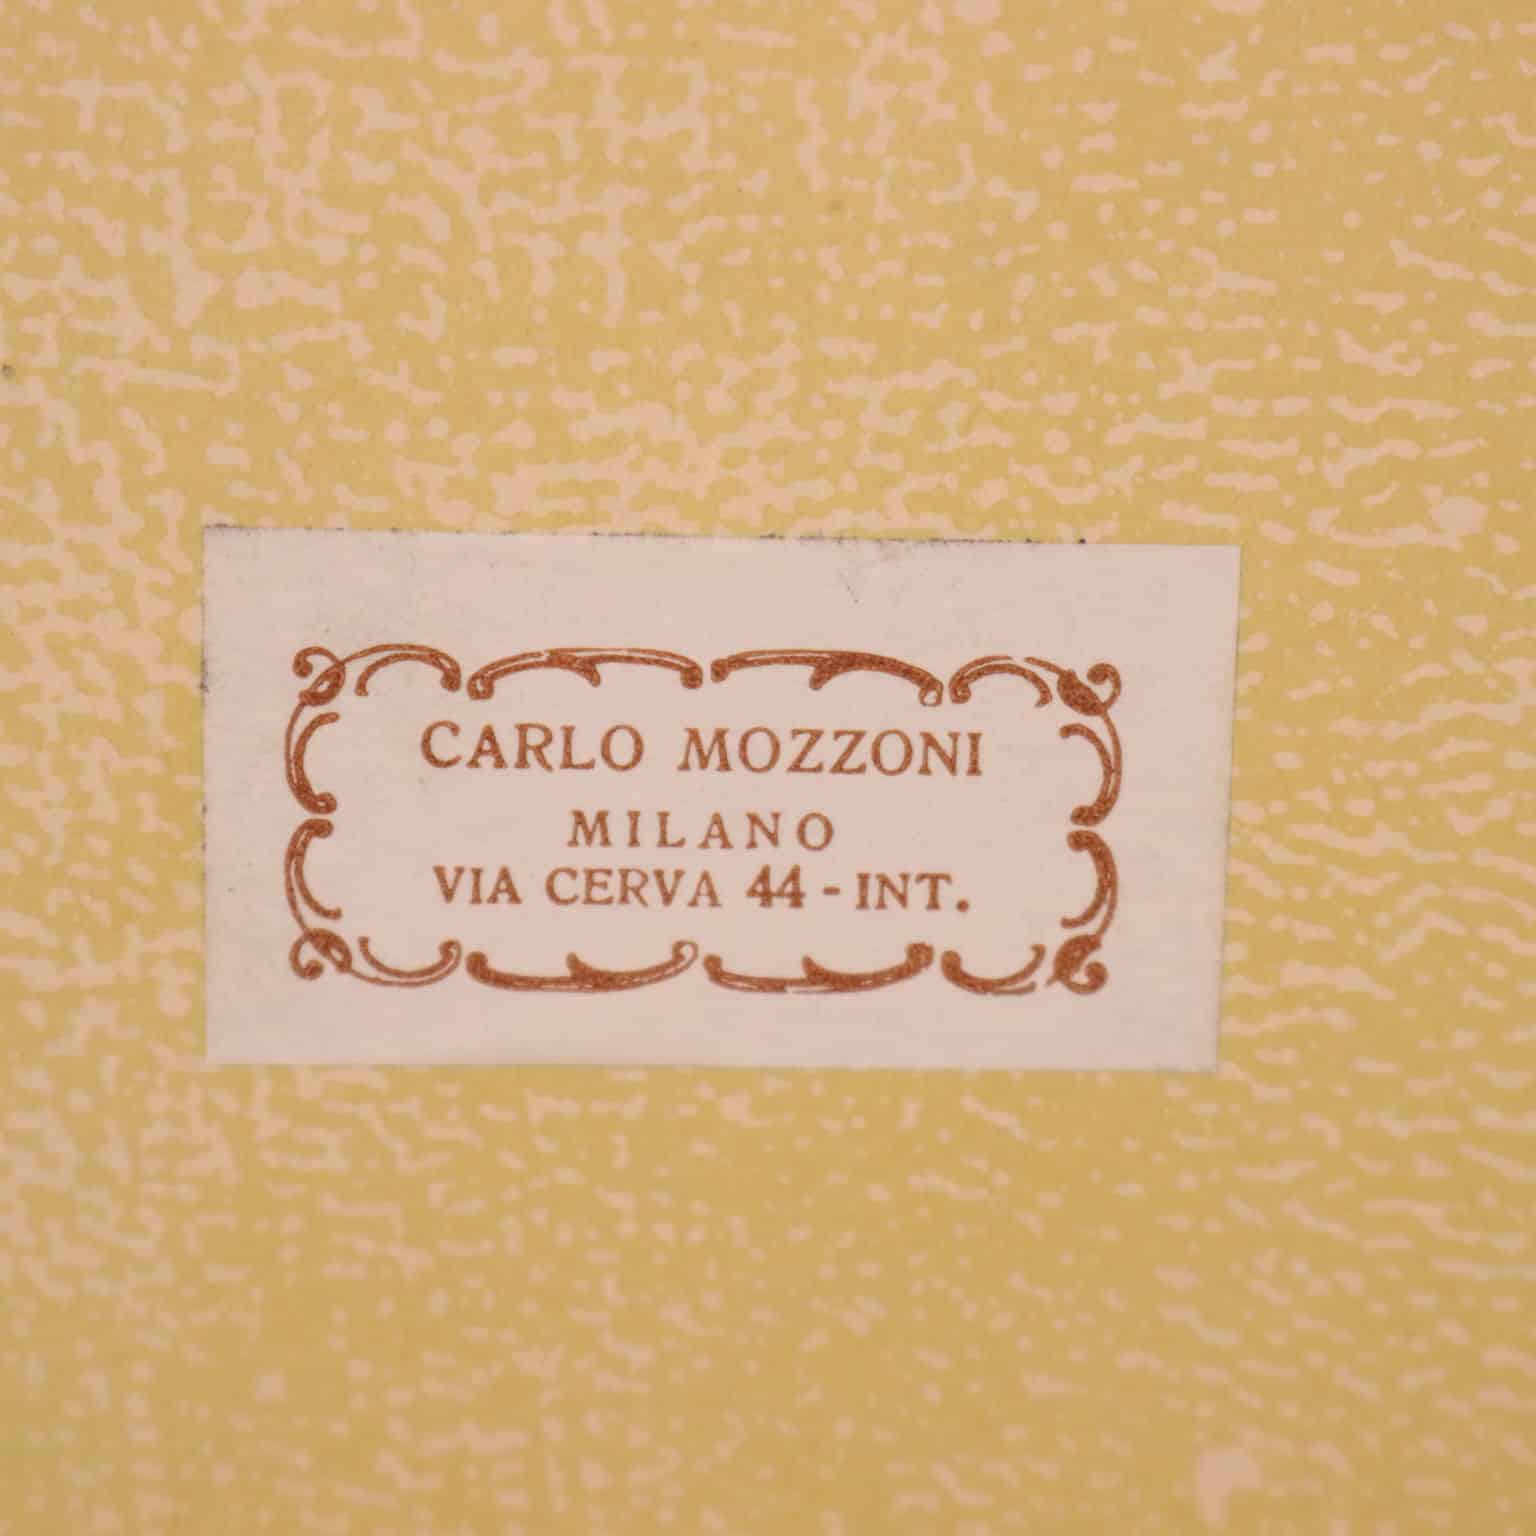 Scaldavivande Carlo Mozzoni – Anni 70-80 Negozio Cambiago